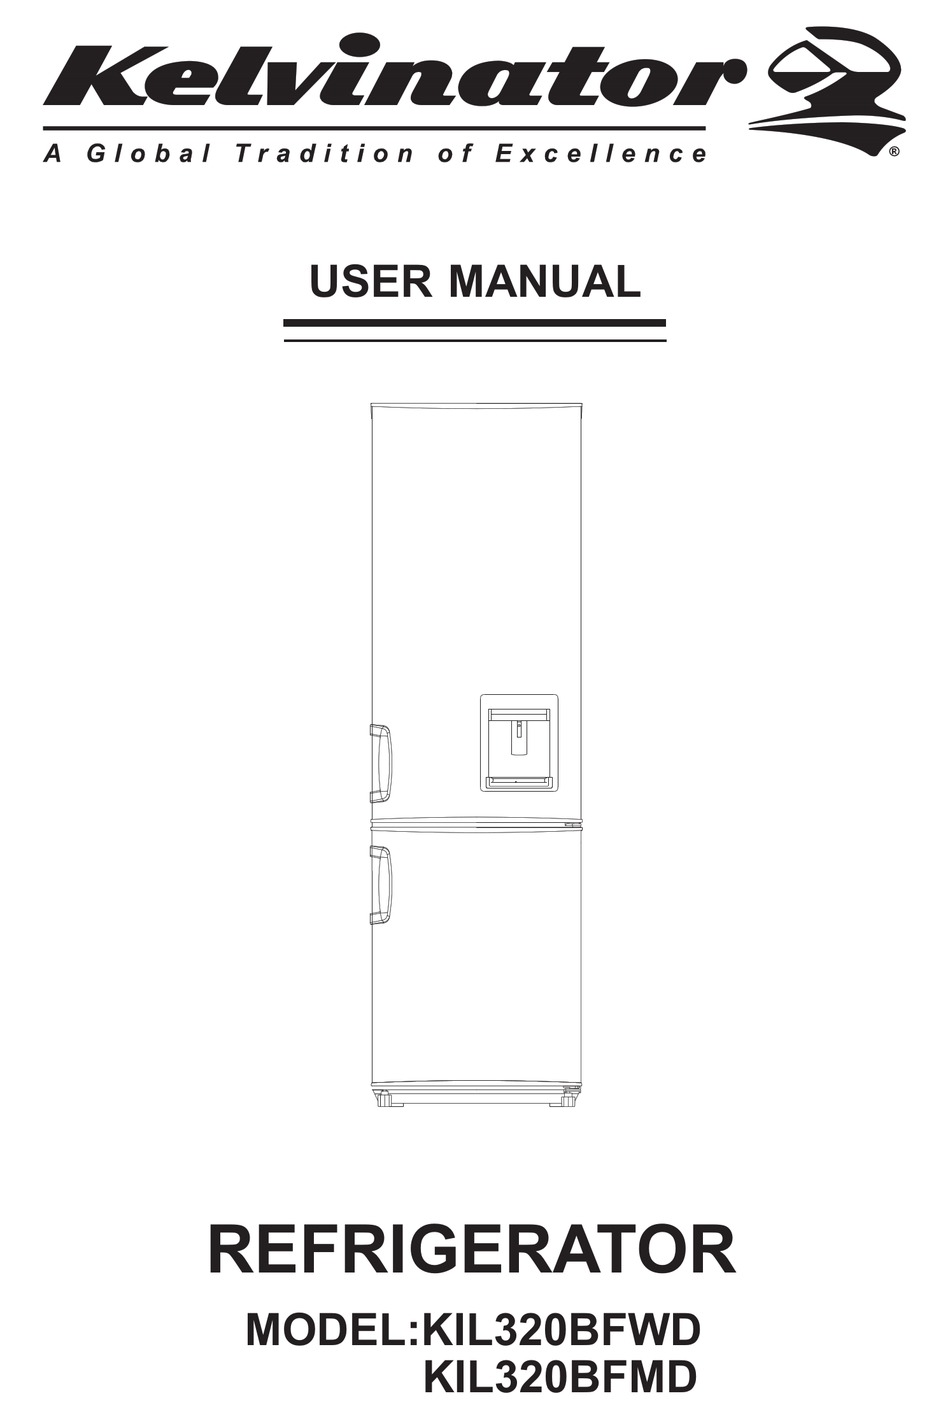 KELVINATOR KIL320BFWD USER MANUAL Pdf Download | ManualsLib